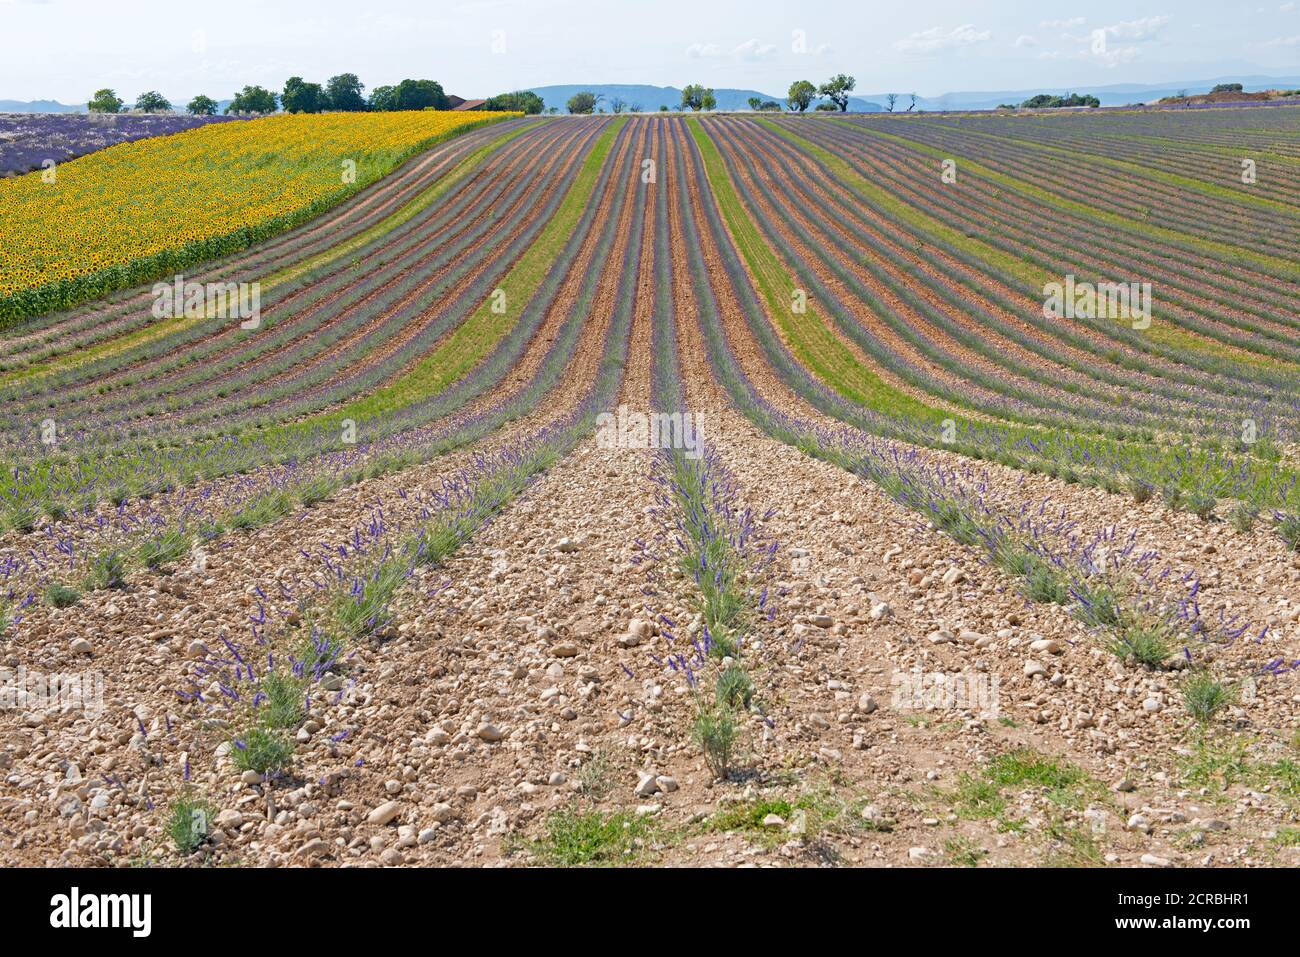 France, Alpes de Haute Provence, Plateau de Valensole, lavender and sunflower fields (Lavandula sp.) Stock Photo